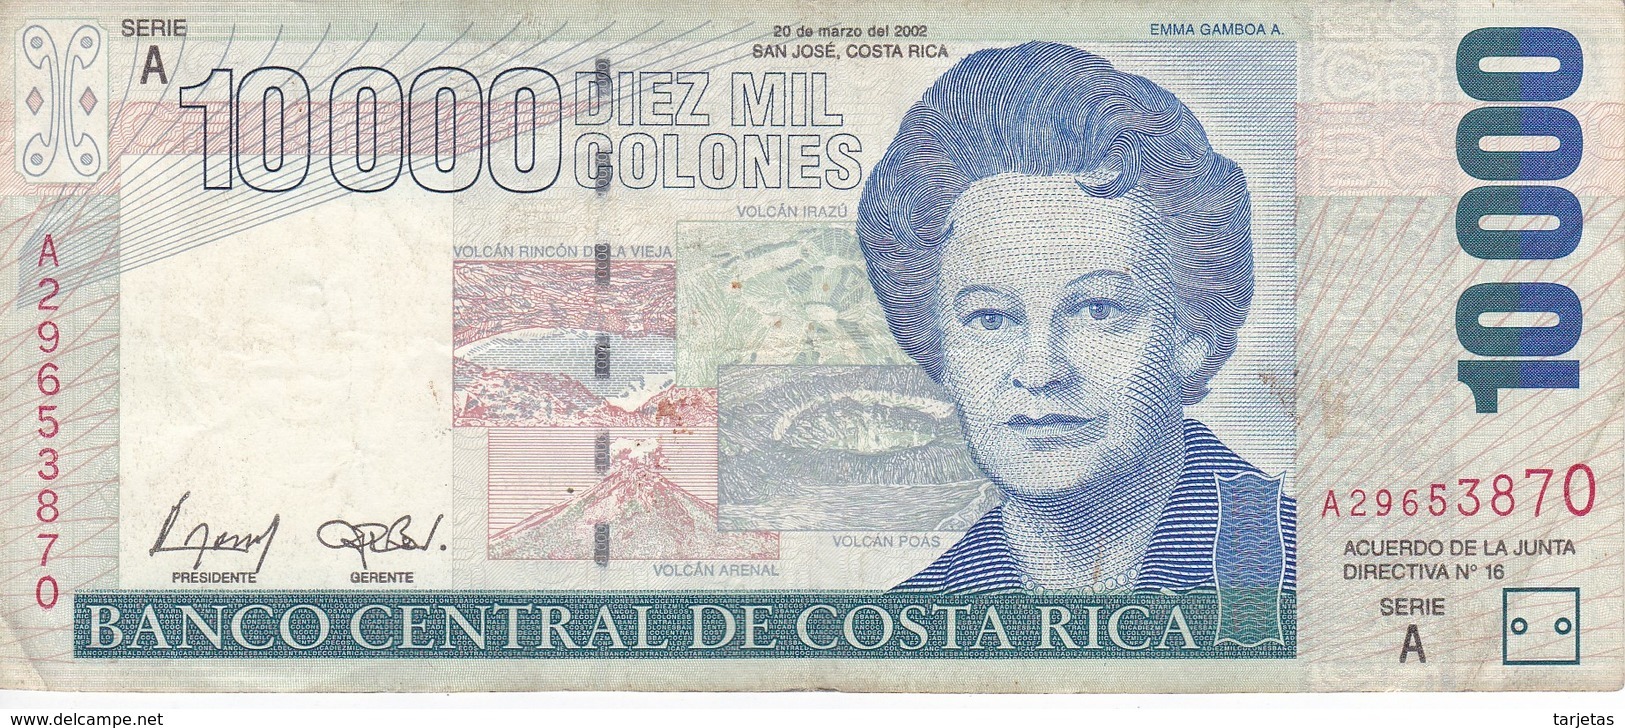 BILLETE DE COSTA RICA DE 10000 COLONES DEL AÑO 2002 (PUMA)  (BANKNOTE) - Costa Rica